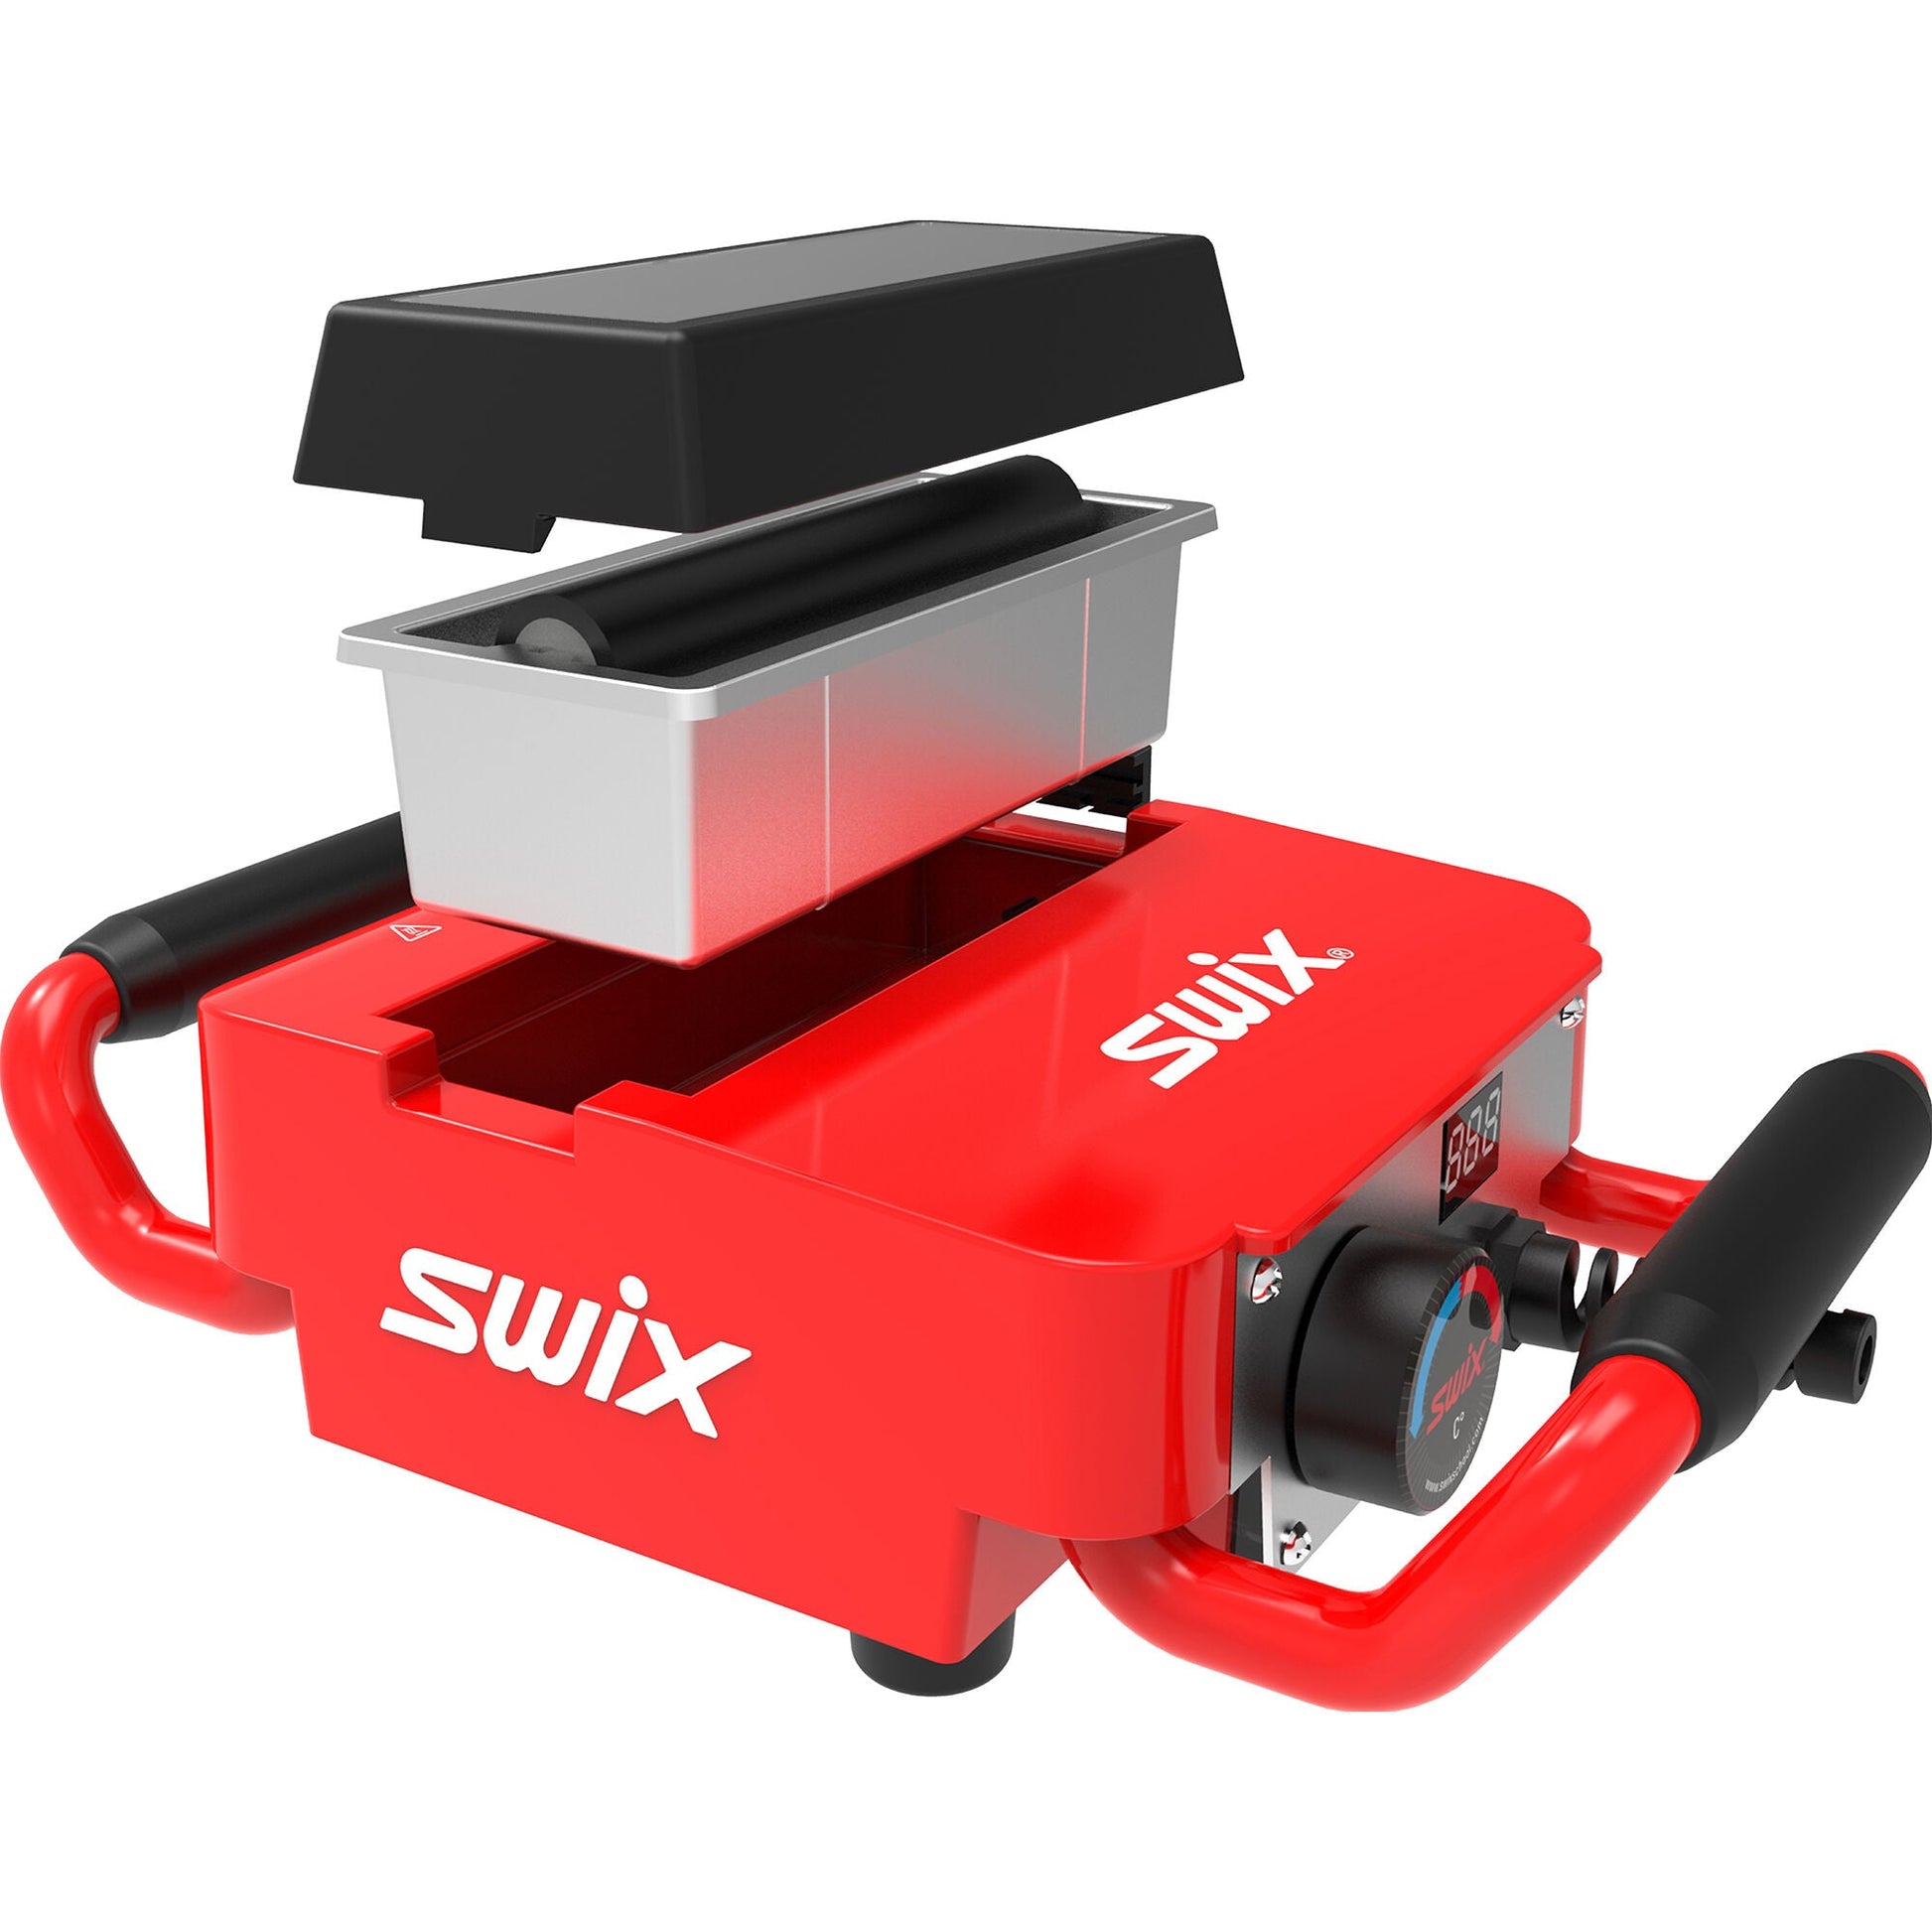 SWIX Wax Machine Tray